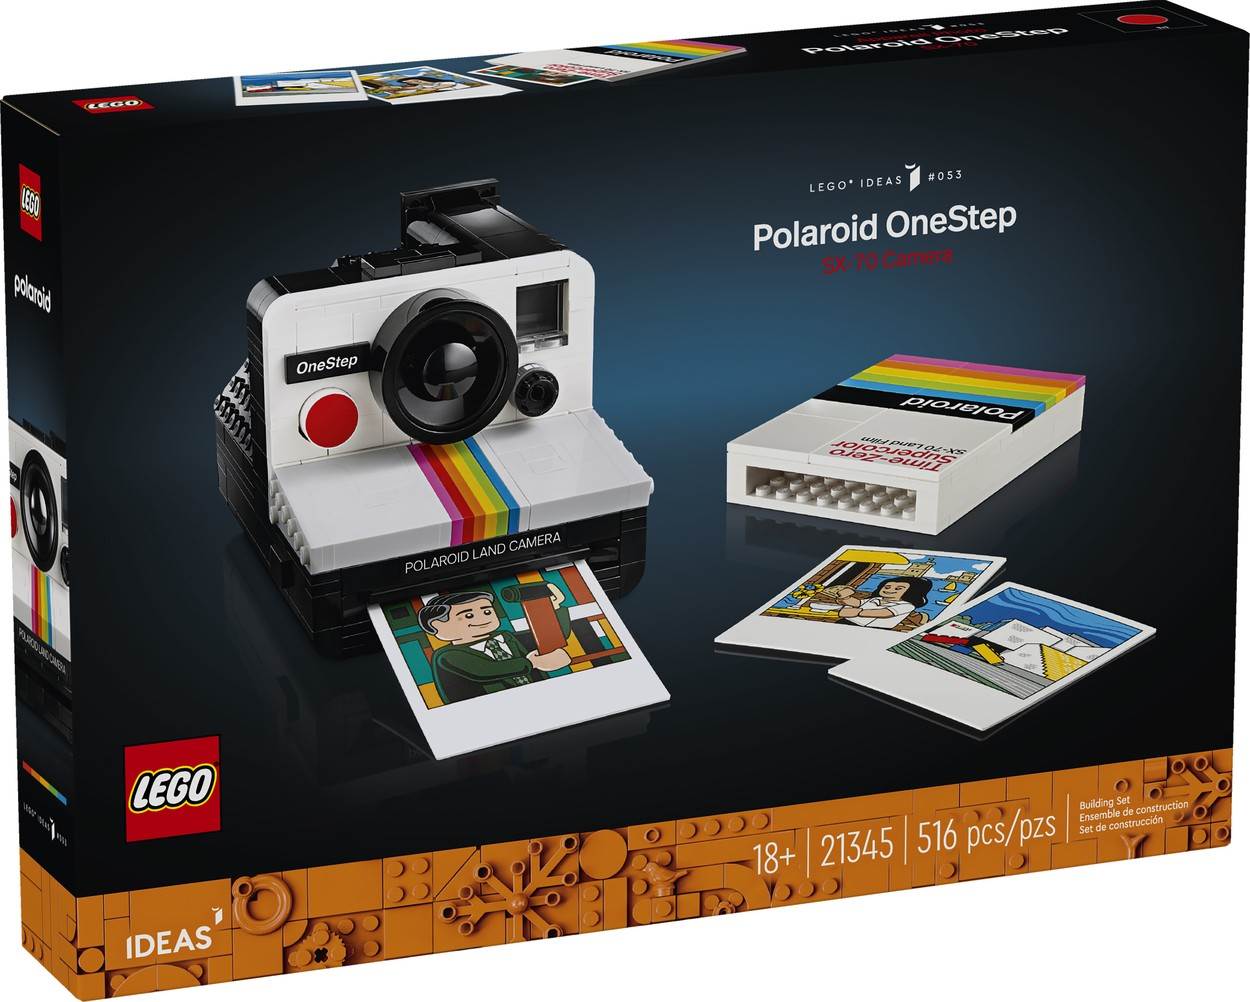  Polaroid OneStep SX-70, Lego (1).jpg 